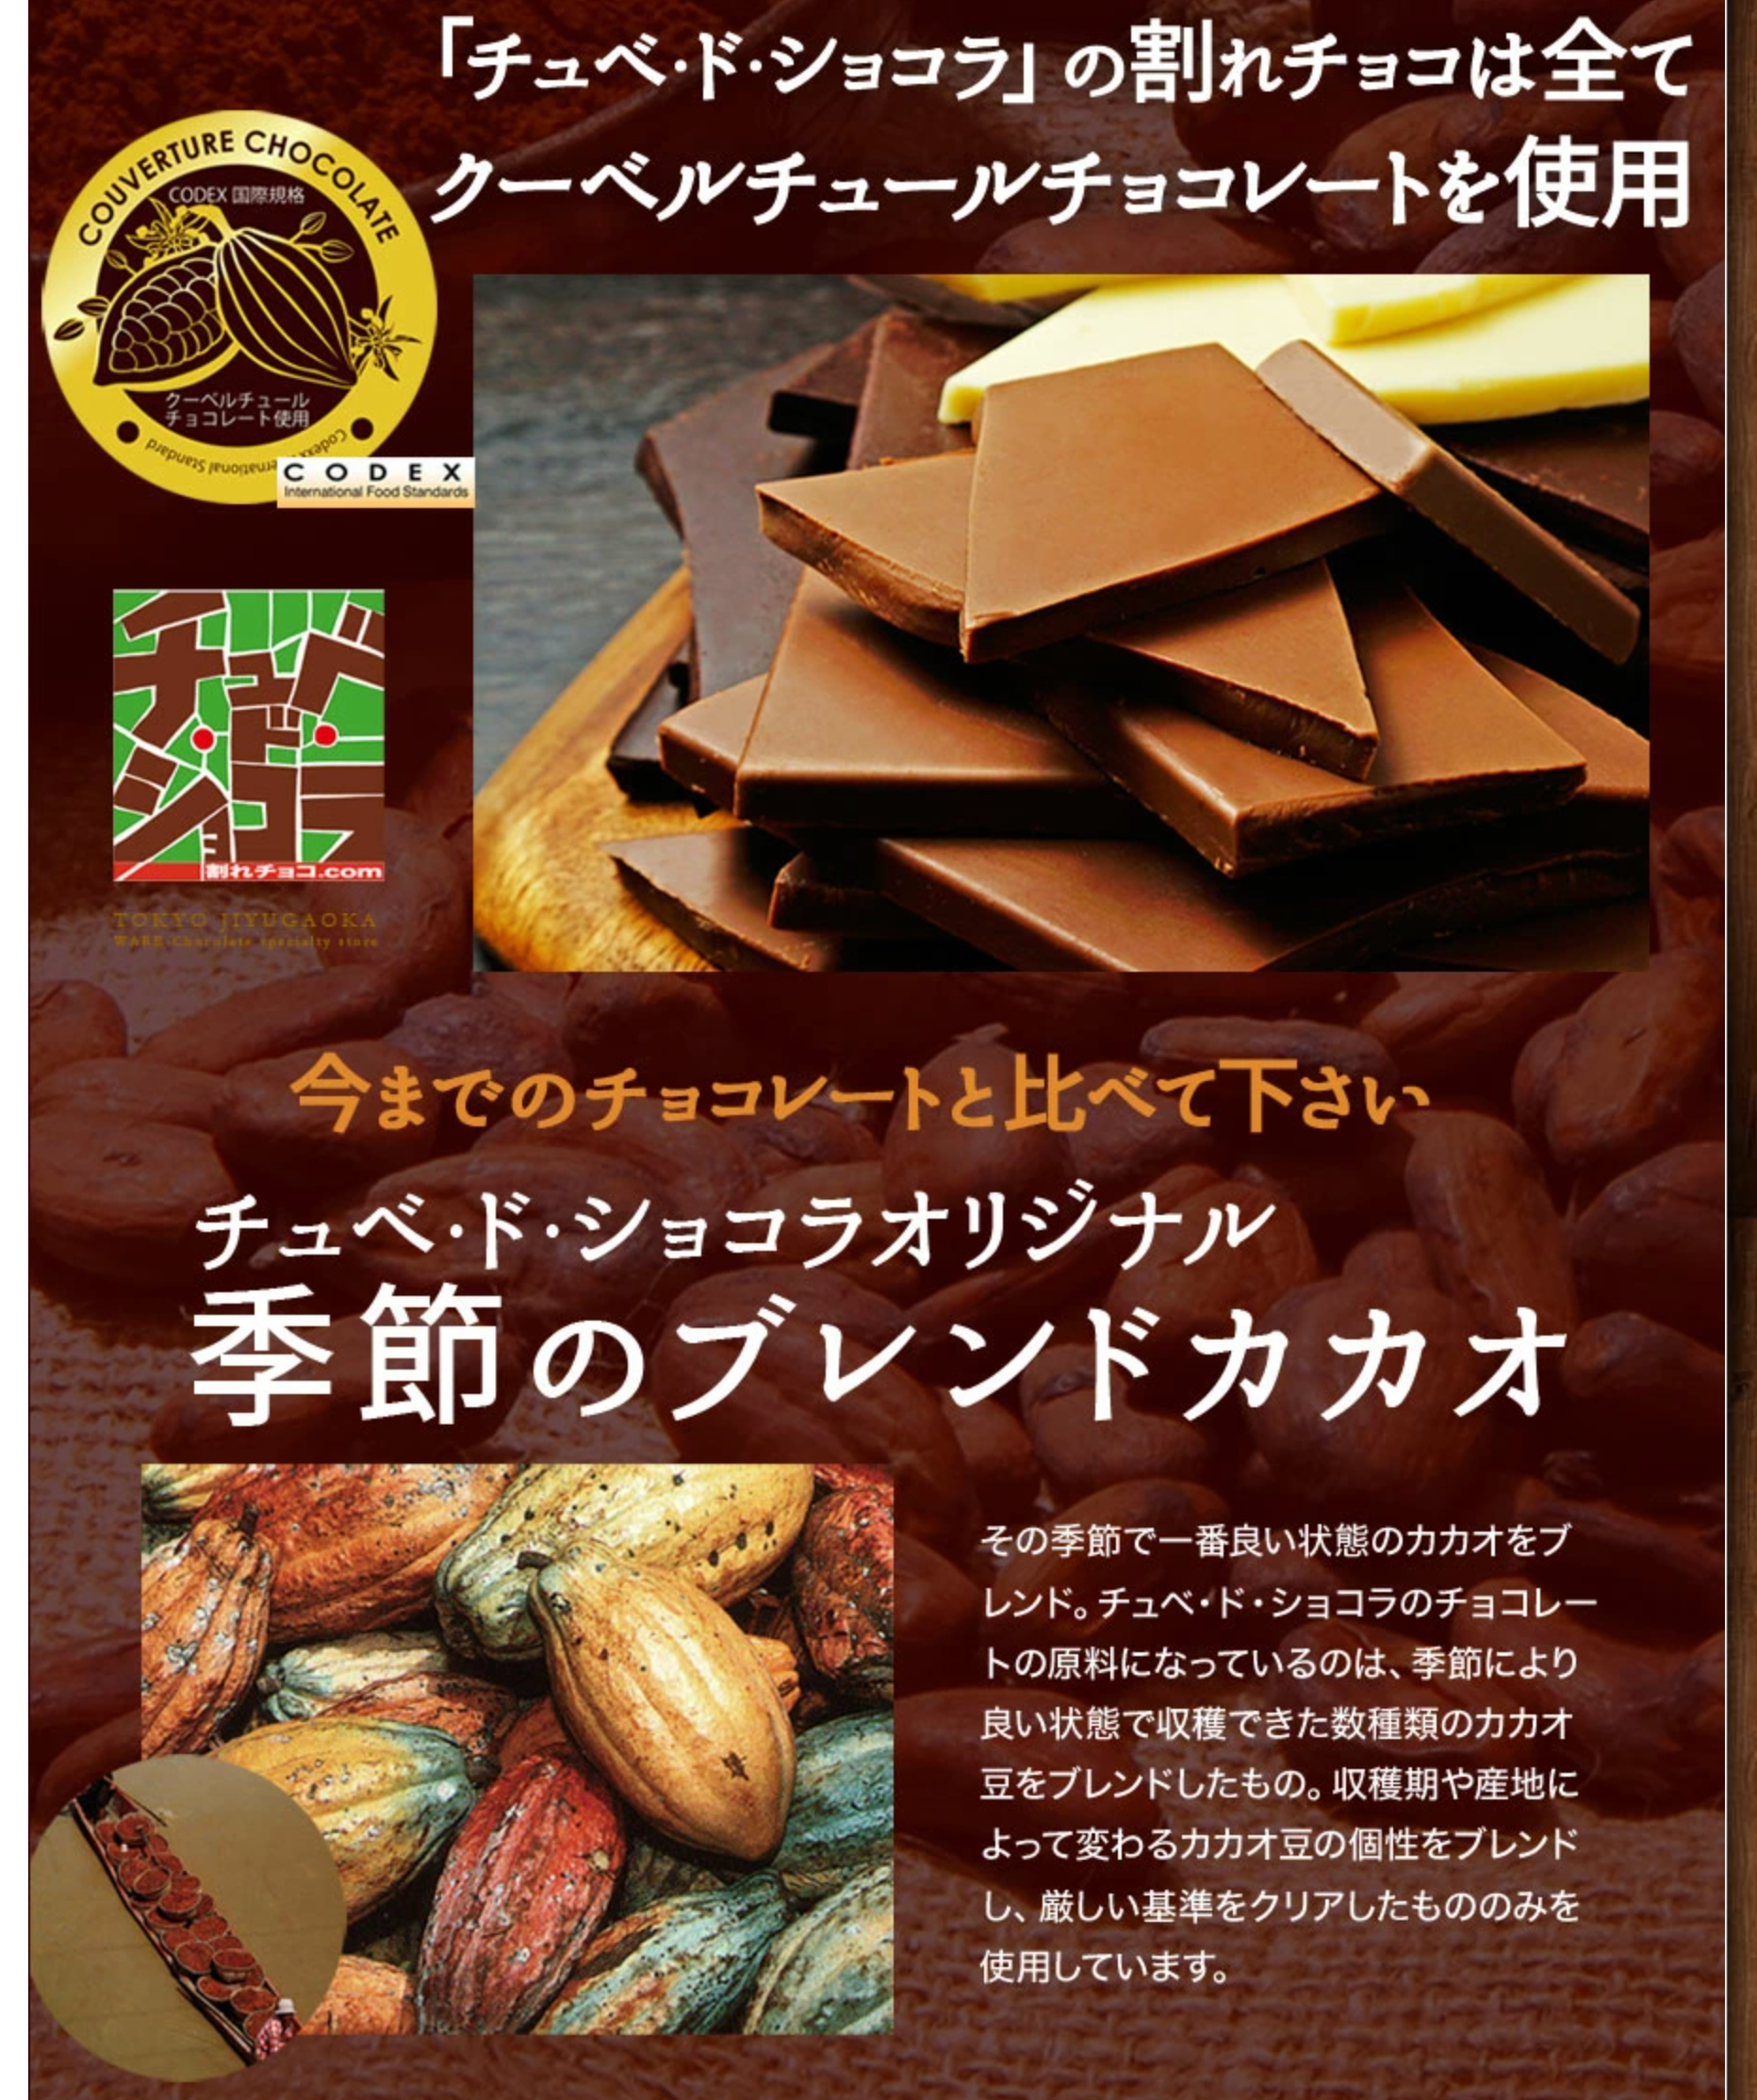 3送料無料【割れチョコミックス12種】-1kg-チュベ・ド・ショコラ-割れチョコ一覧-チュベ・ド・ショコラ